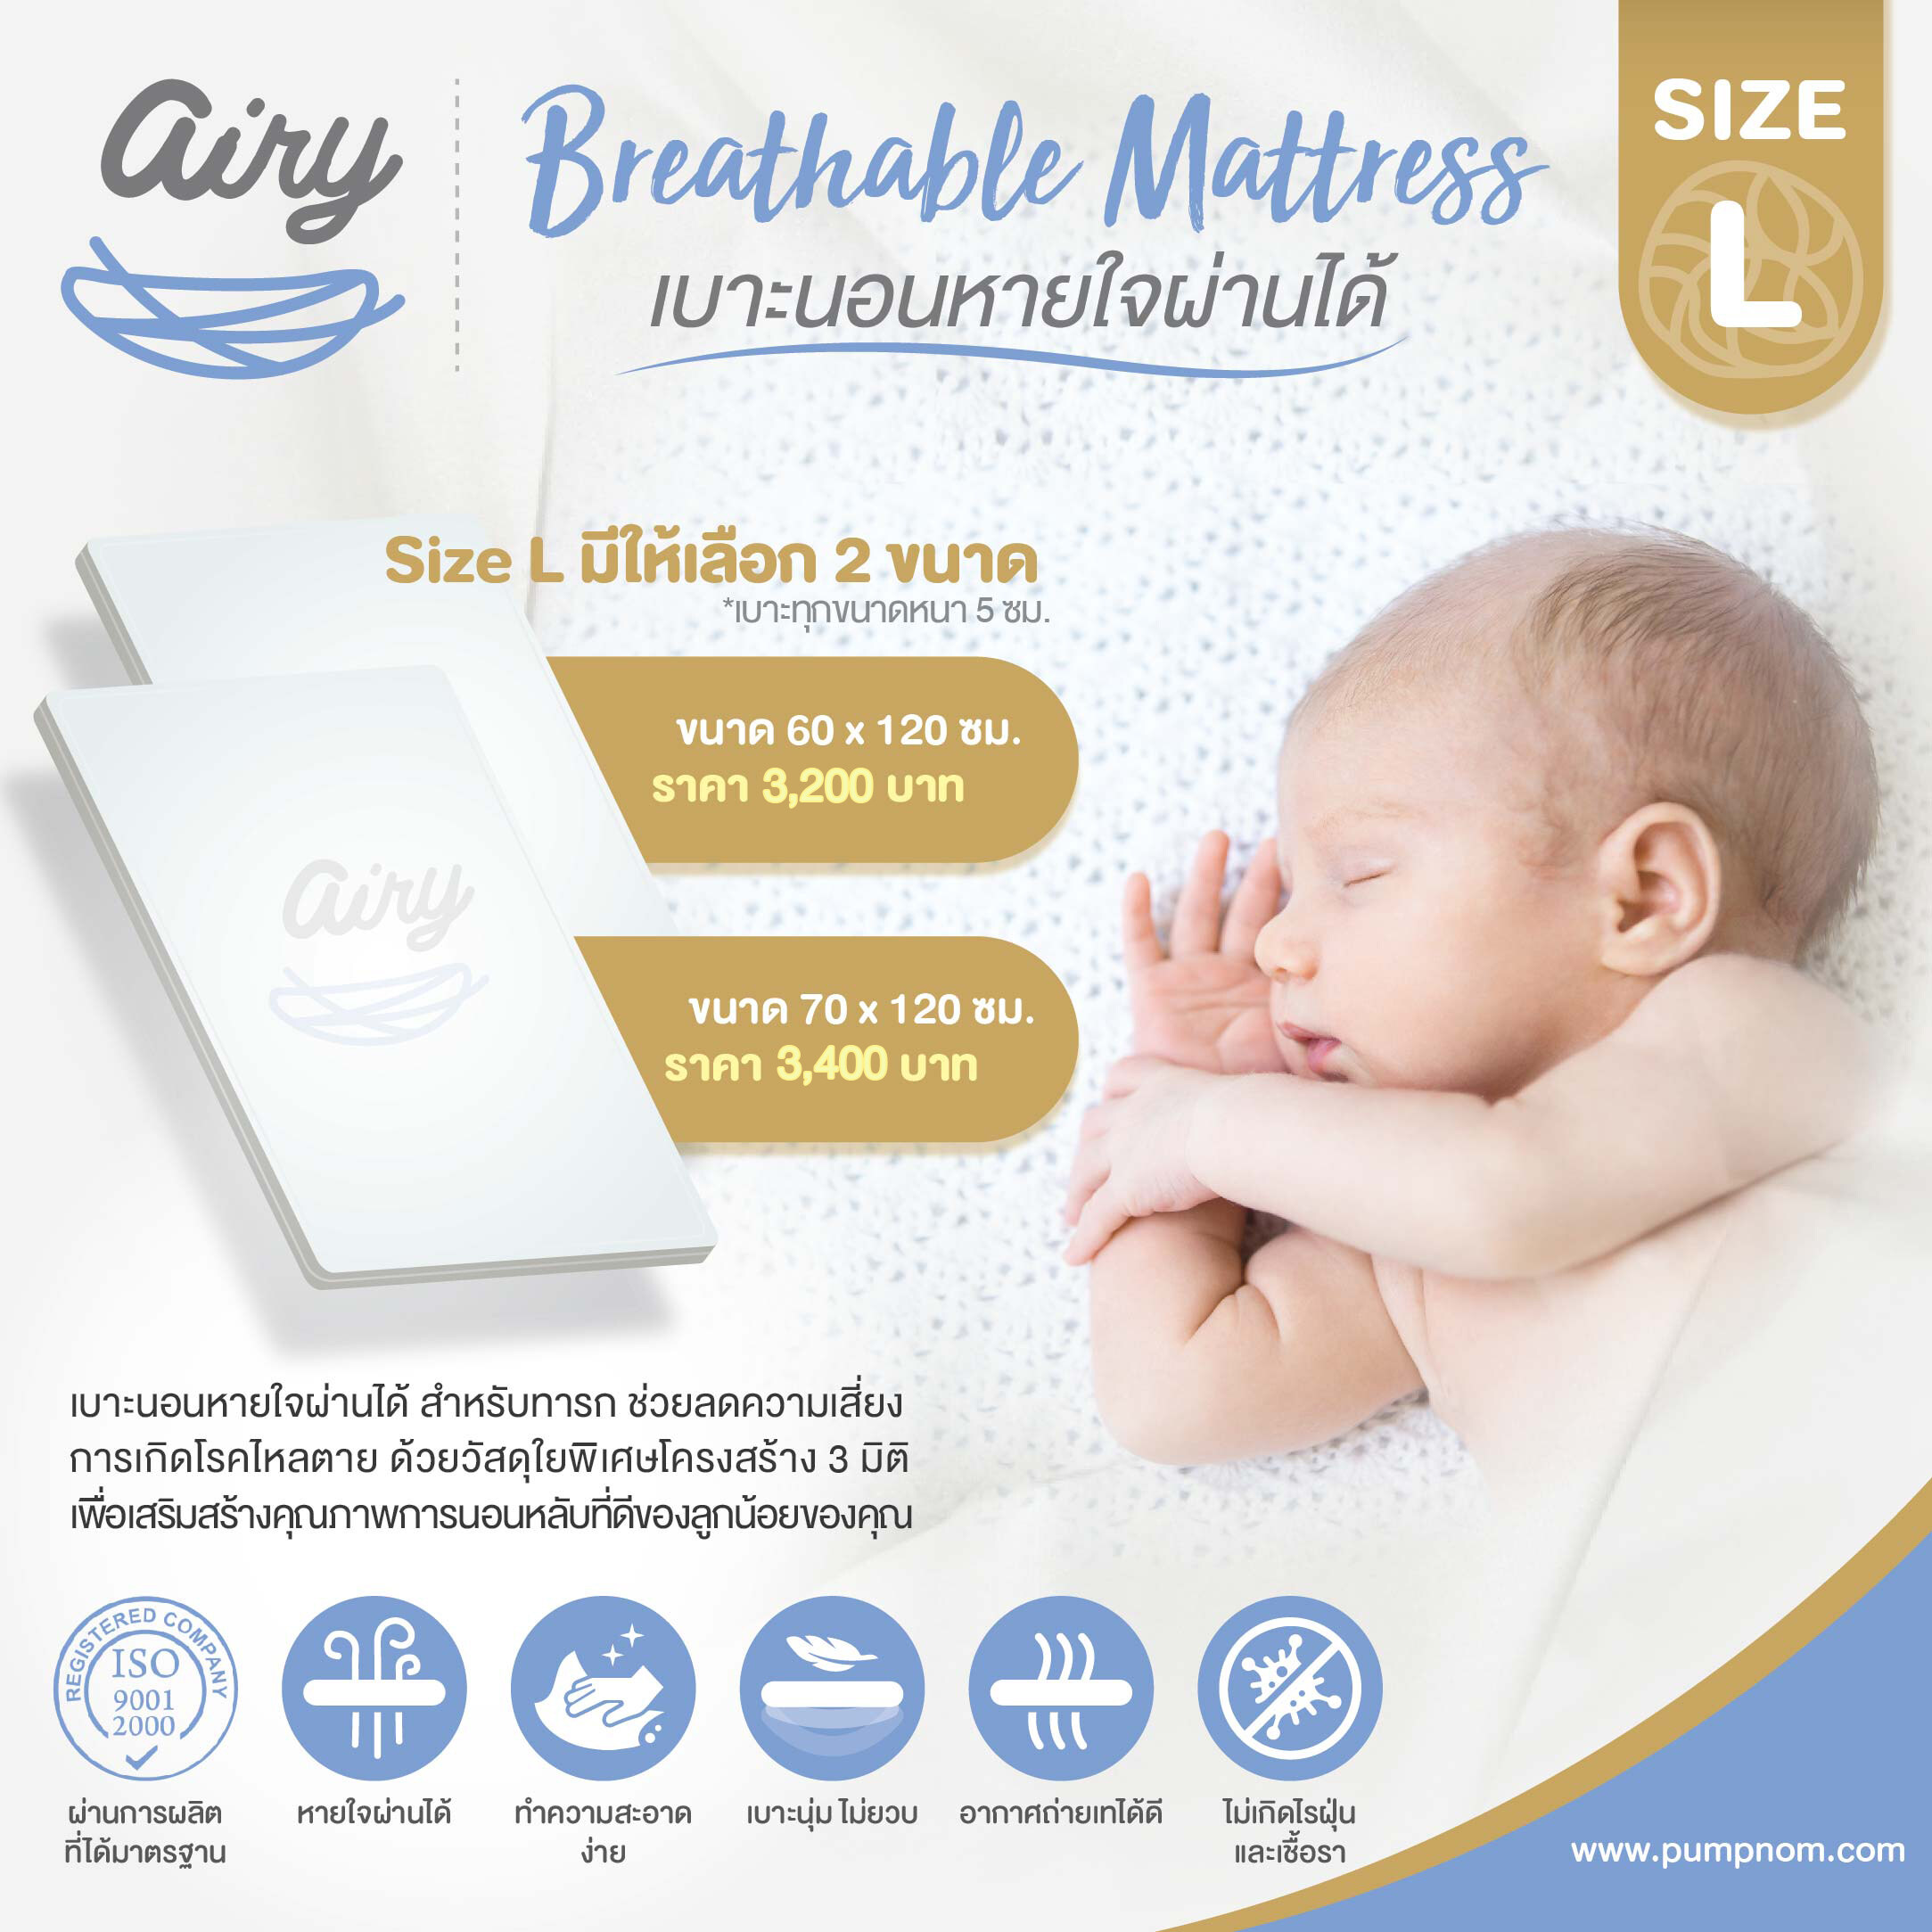 โปรโมชั่น AIRY (แอร์รี่) Breathable Matress (size L) เบาะนอนสำหรับน้องแรกเกิด หายใจผ่านได้ ไม่เกิดไรฝุ่นและเชื้อรา